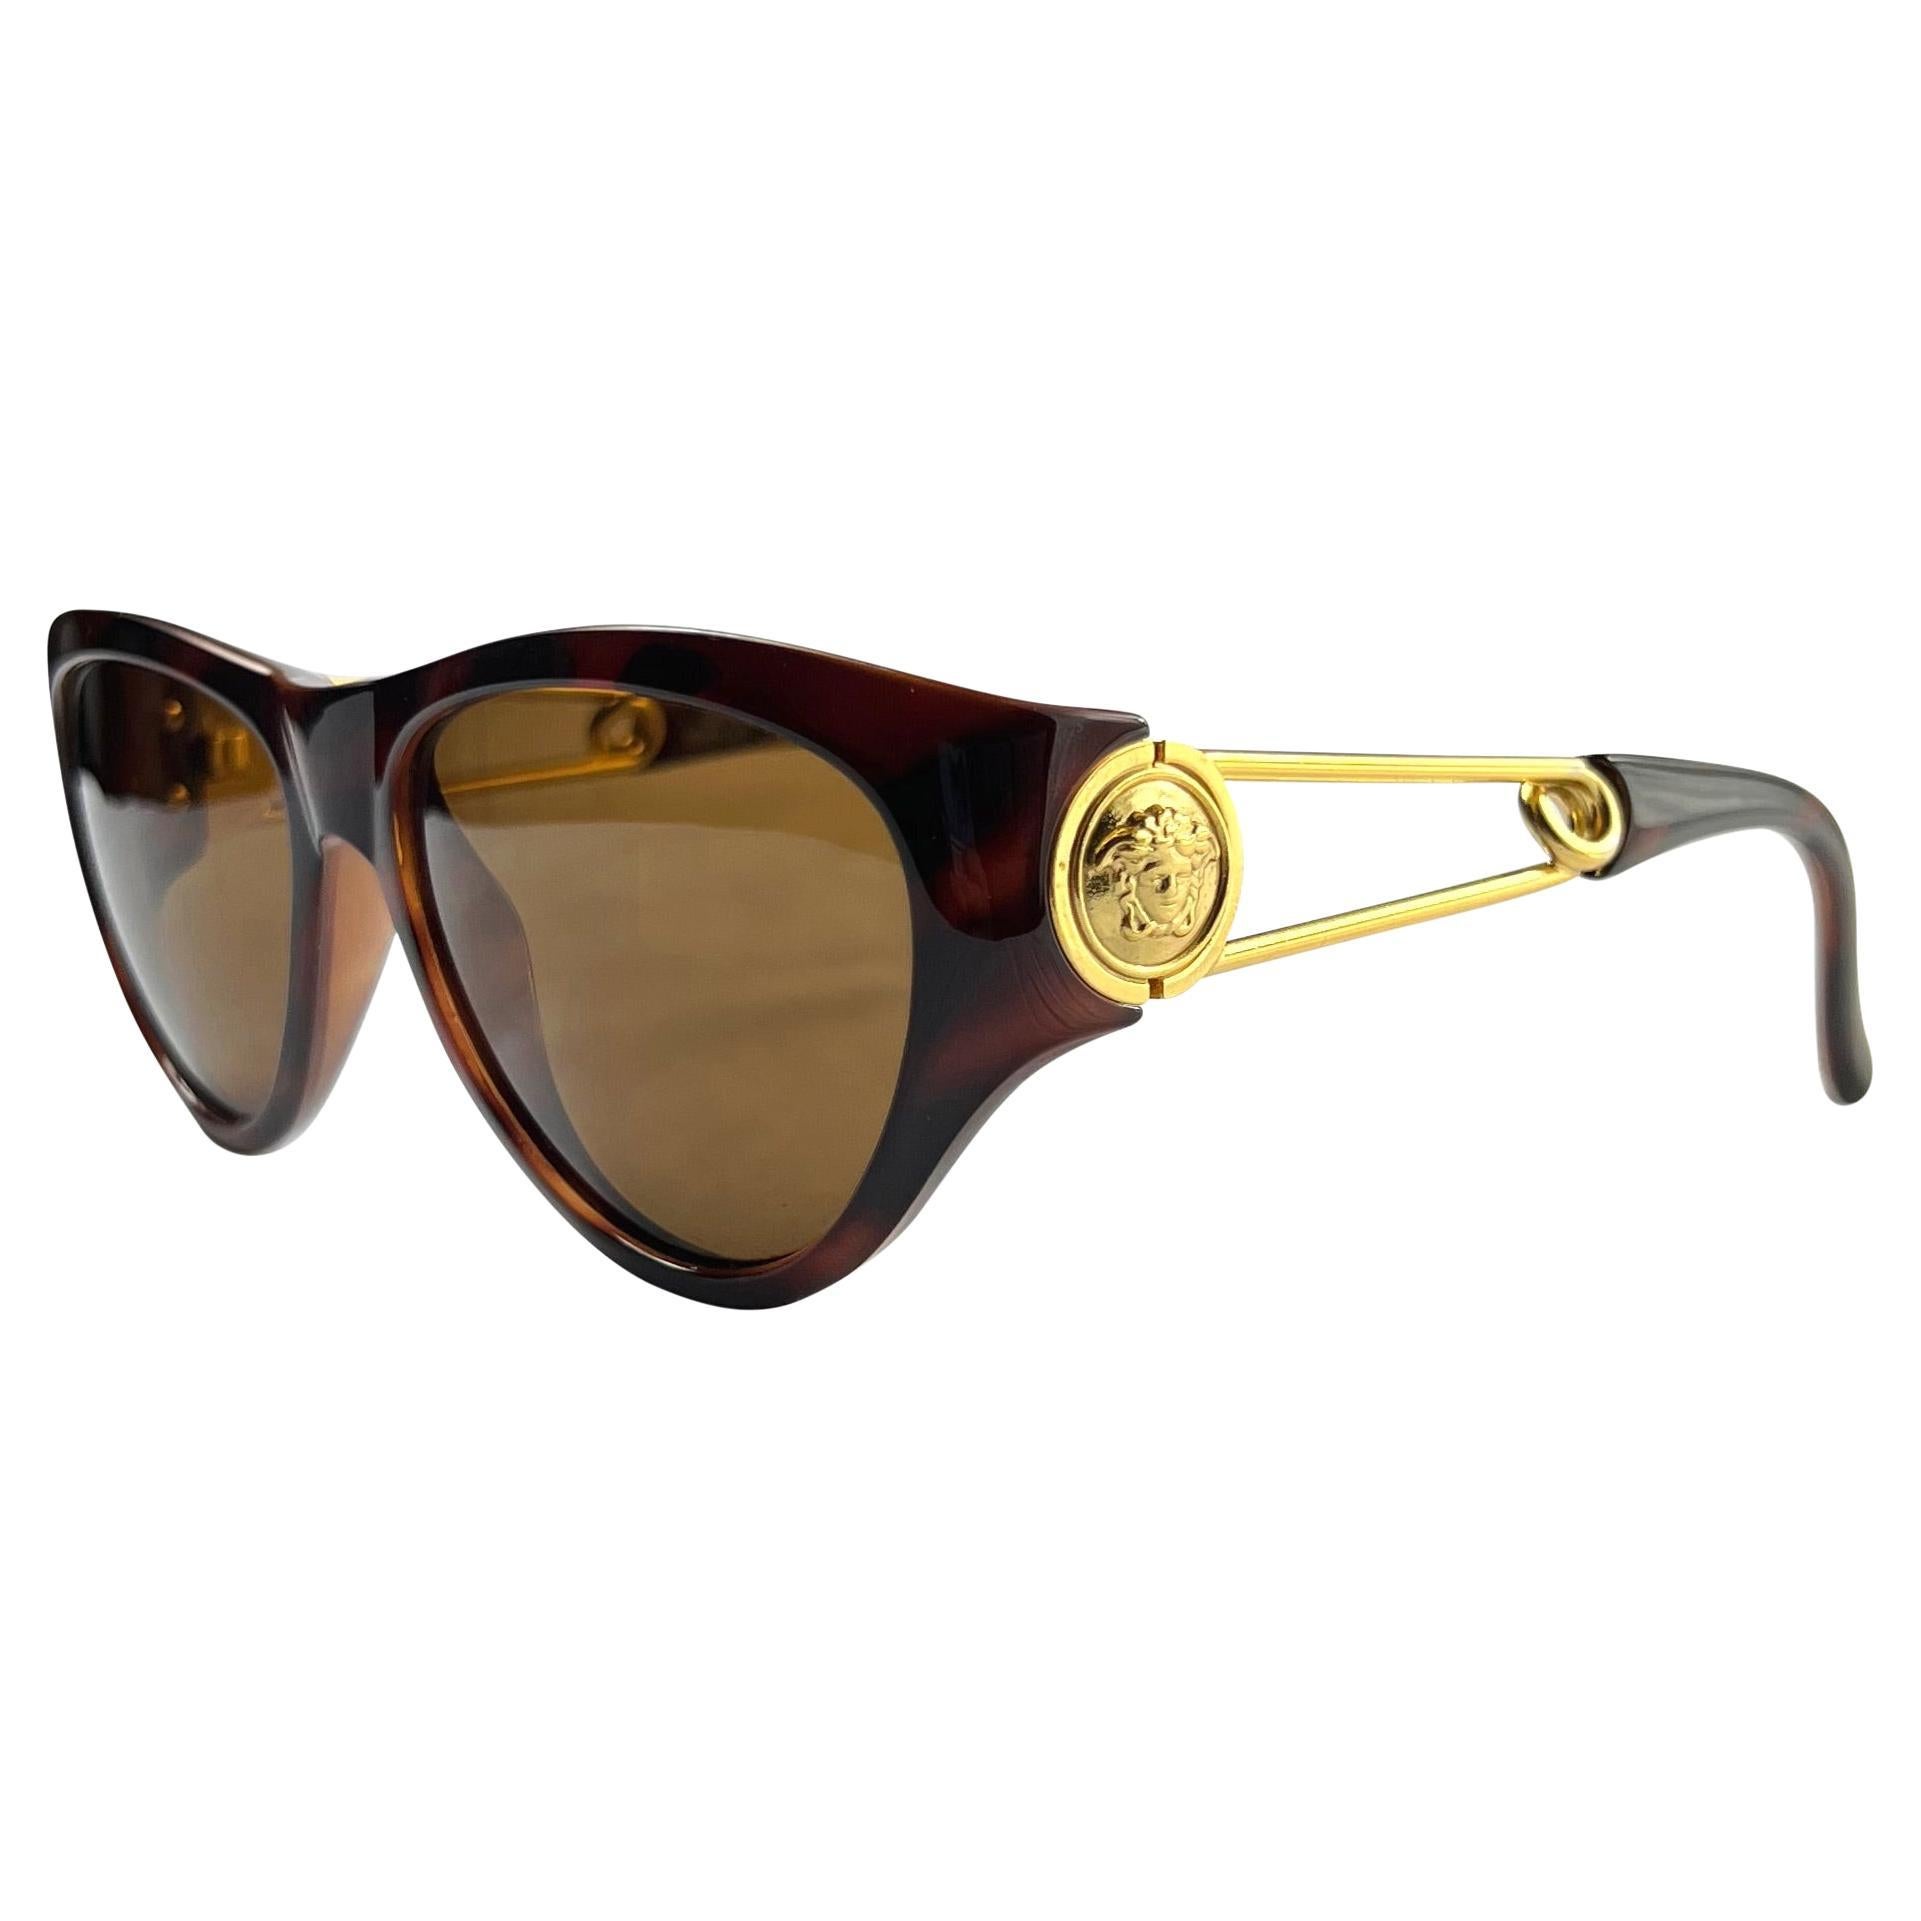 S/S 1994 Gianni Versace Sicherheitsnadel Medusa Gold Brown Acetat Sonnenbrille